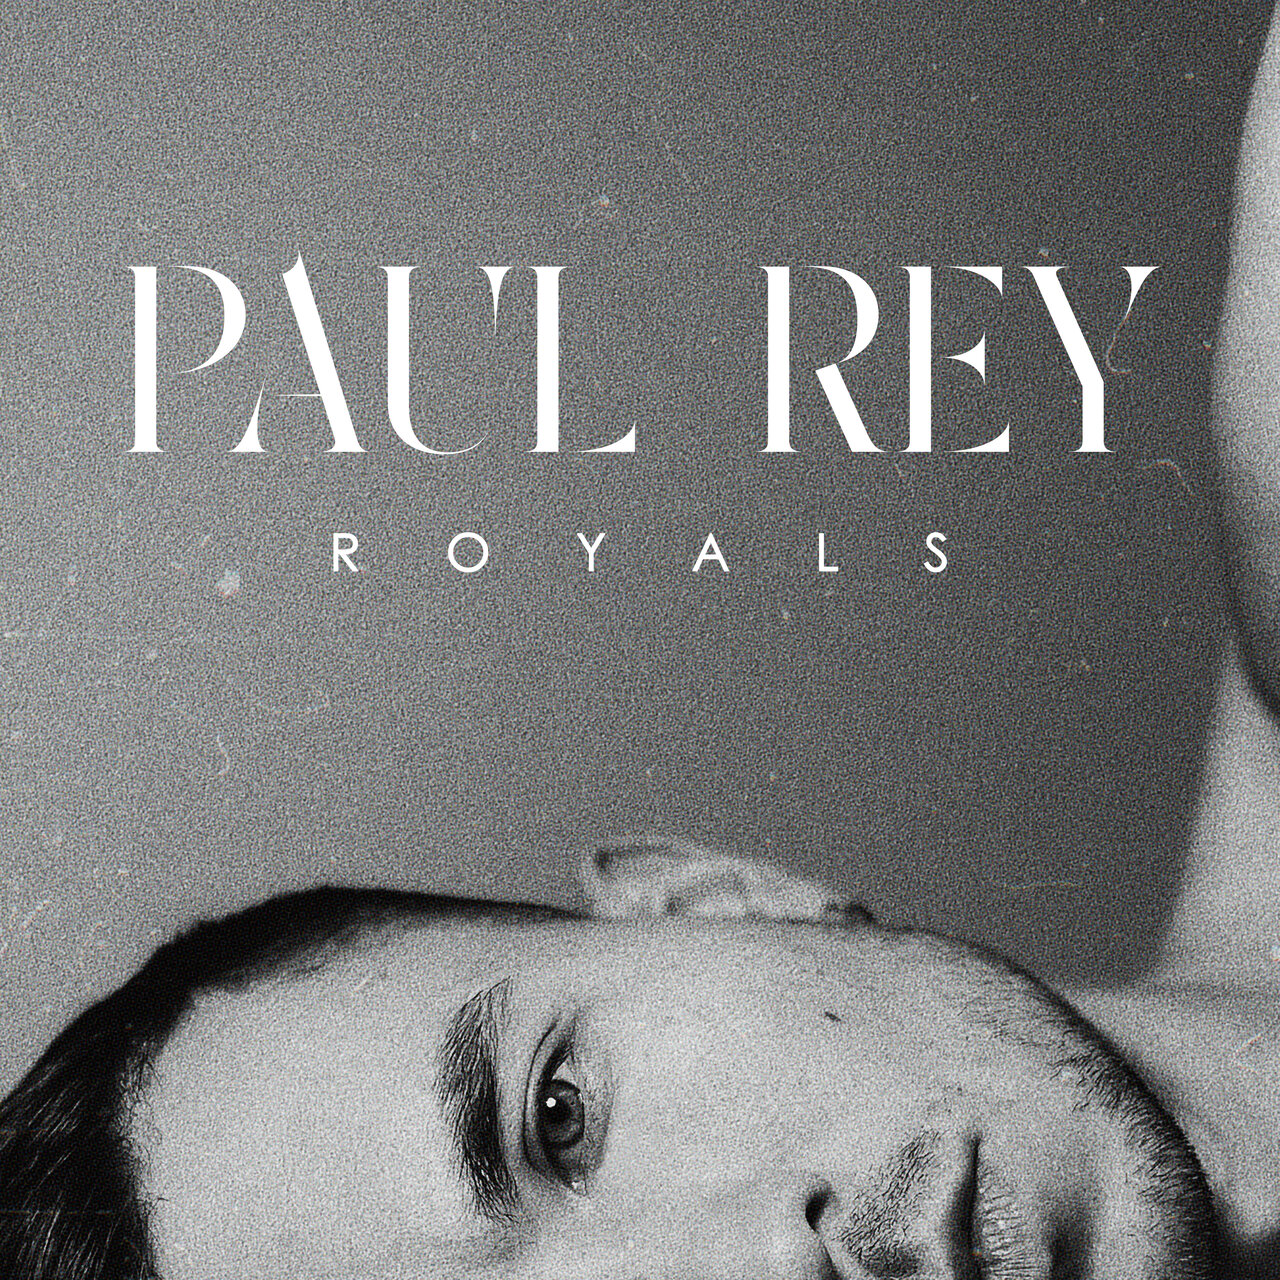 Paul Rey Royals cover artwork